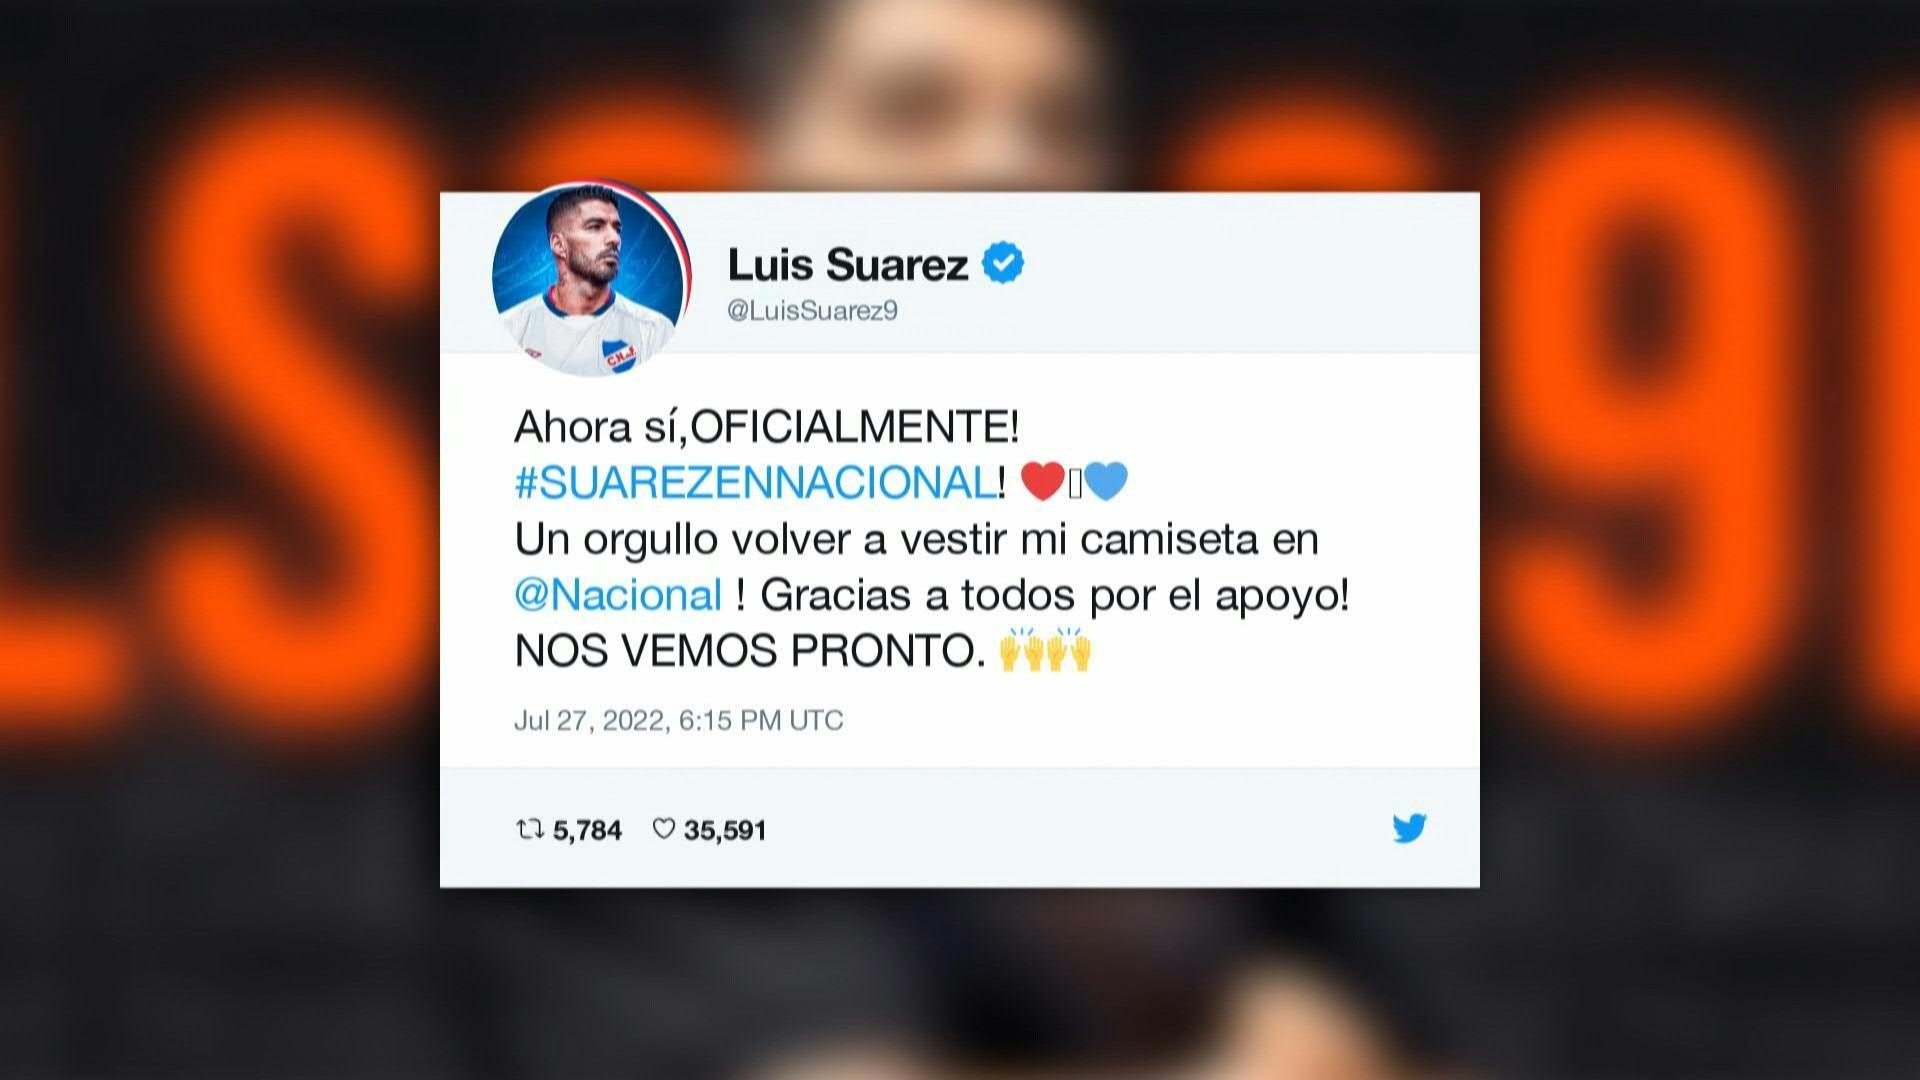 El astro del fútbol Luis Suárez volverá a Uruguay para jugar hasta fin de año en Nacional, el equipo en el que debutó como profesional hace 17 años, lo que le permitirá tener continuidad de cara al Mundial de Catar-2022.